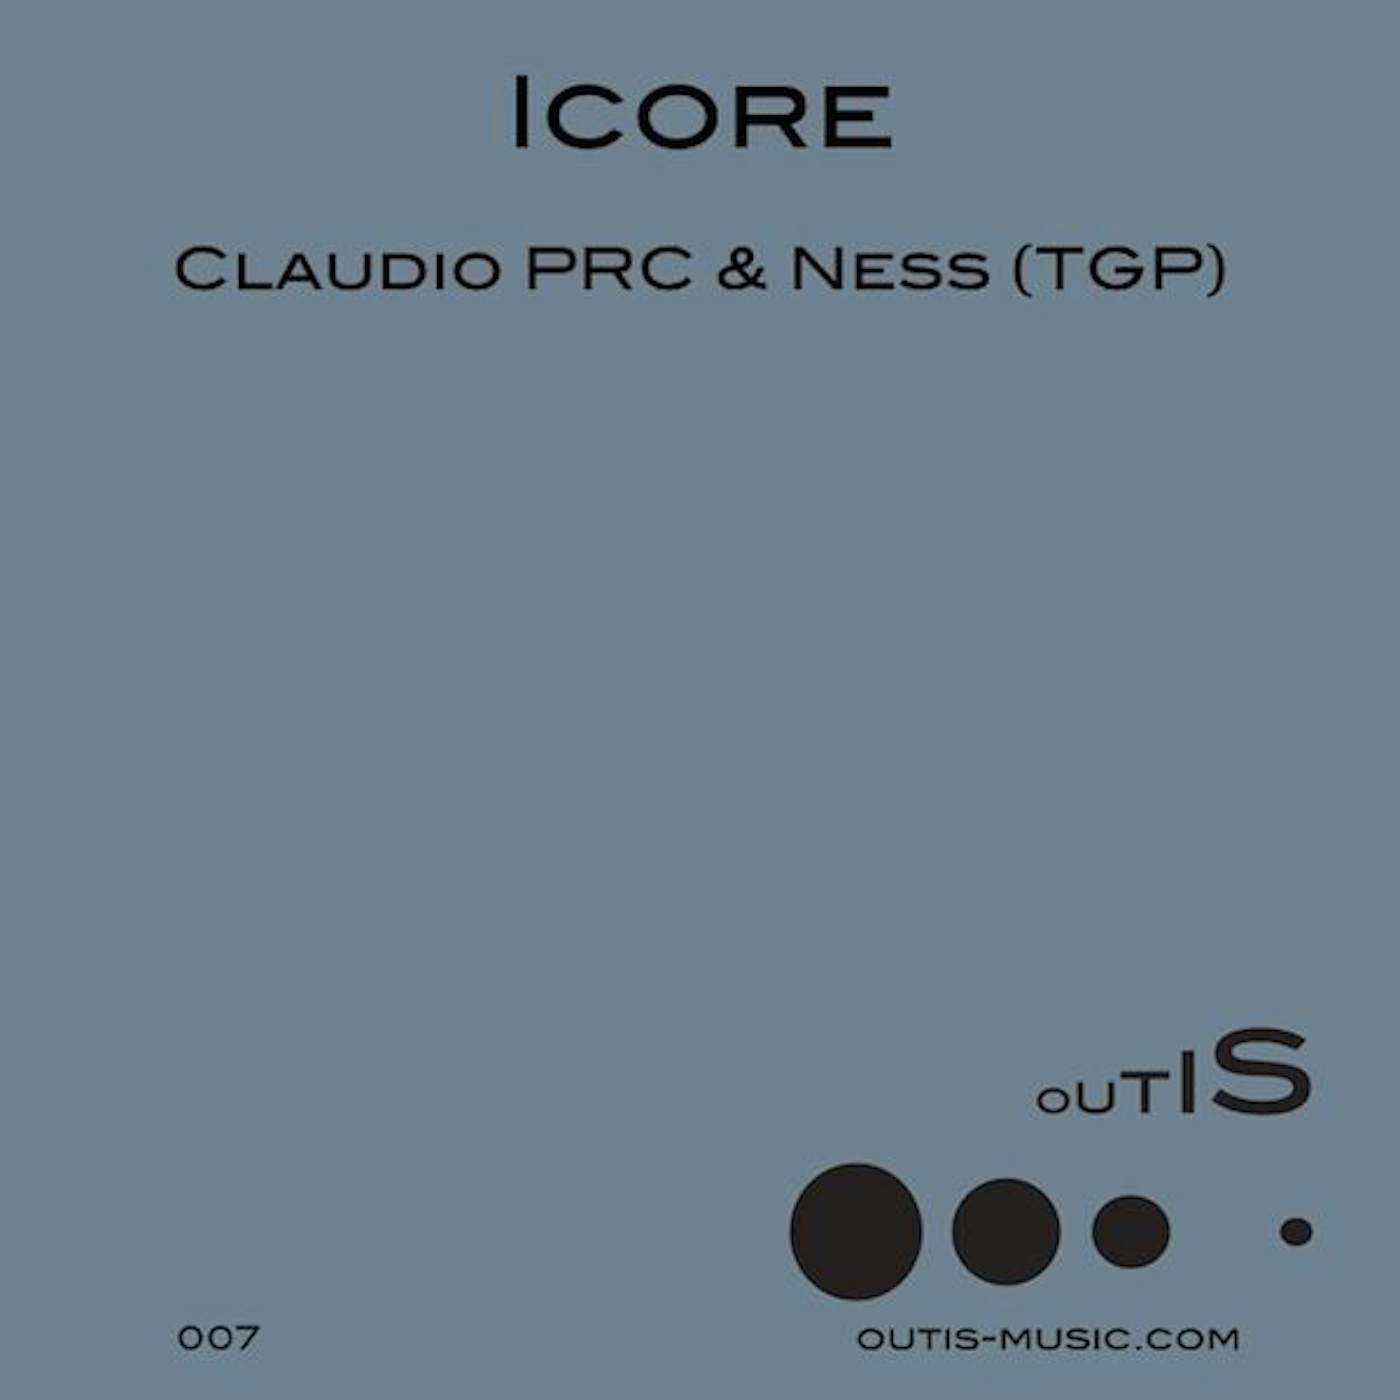 Claudio PRC & Ness (TGP) Icore Vinyl Record